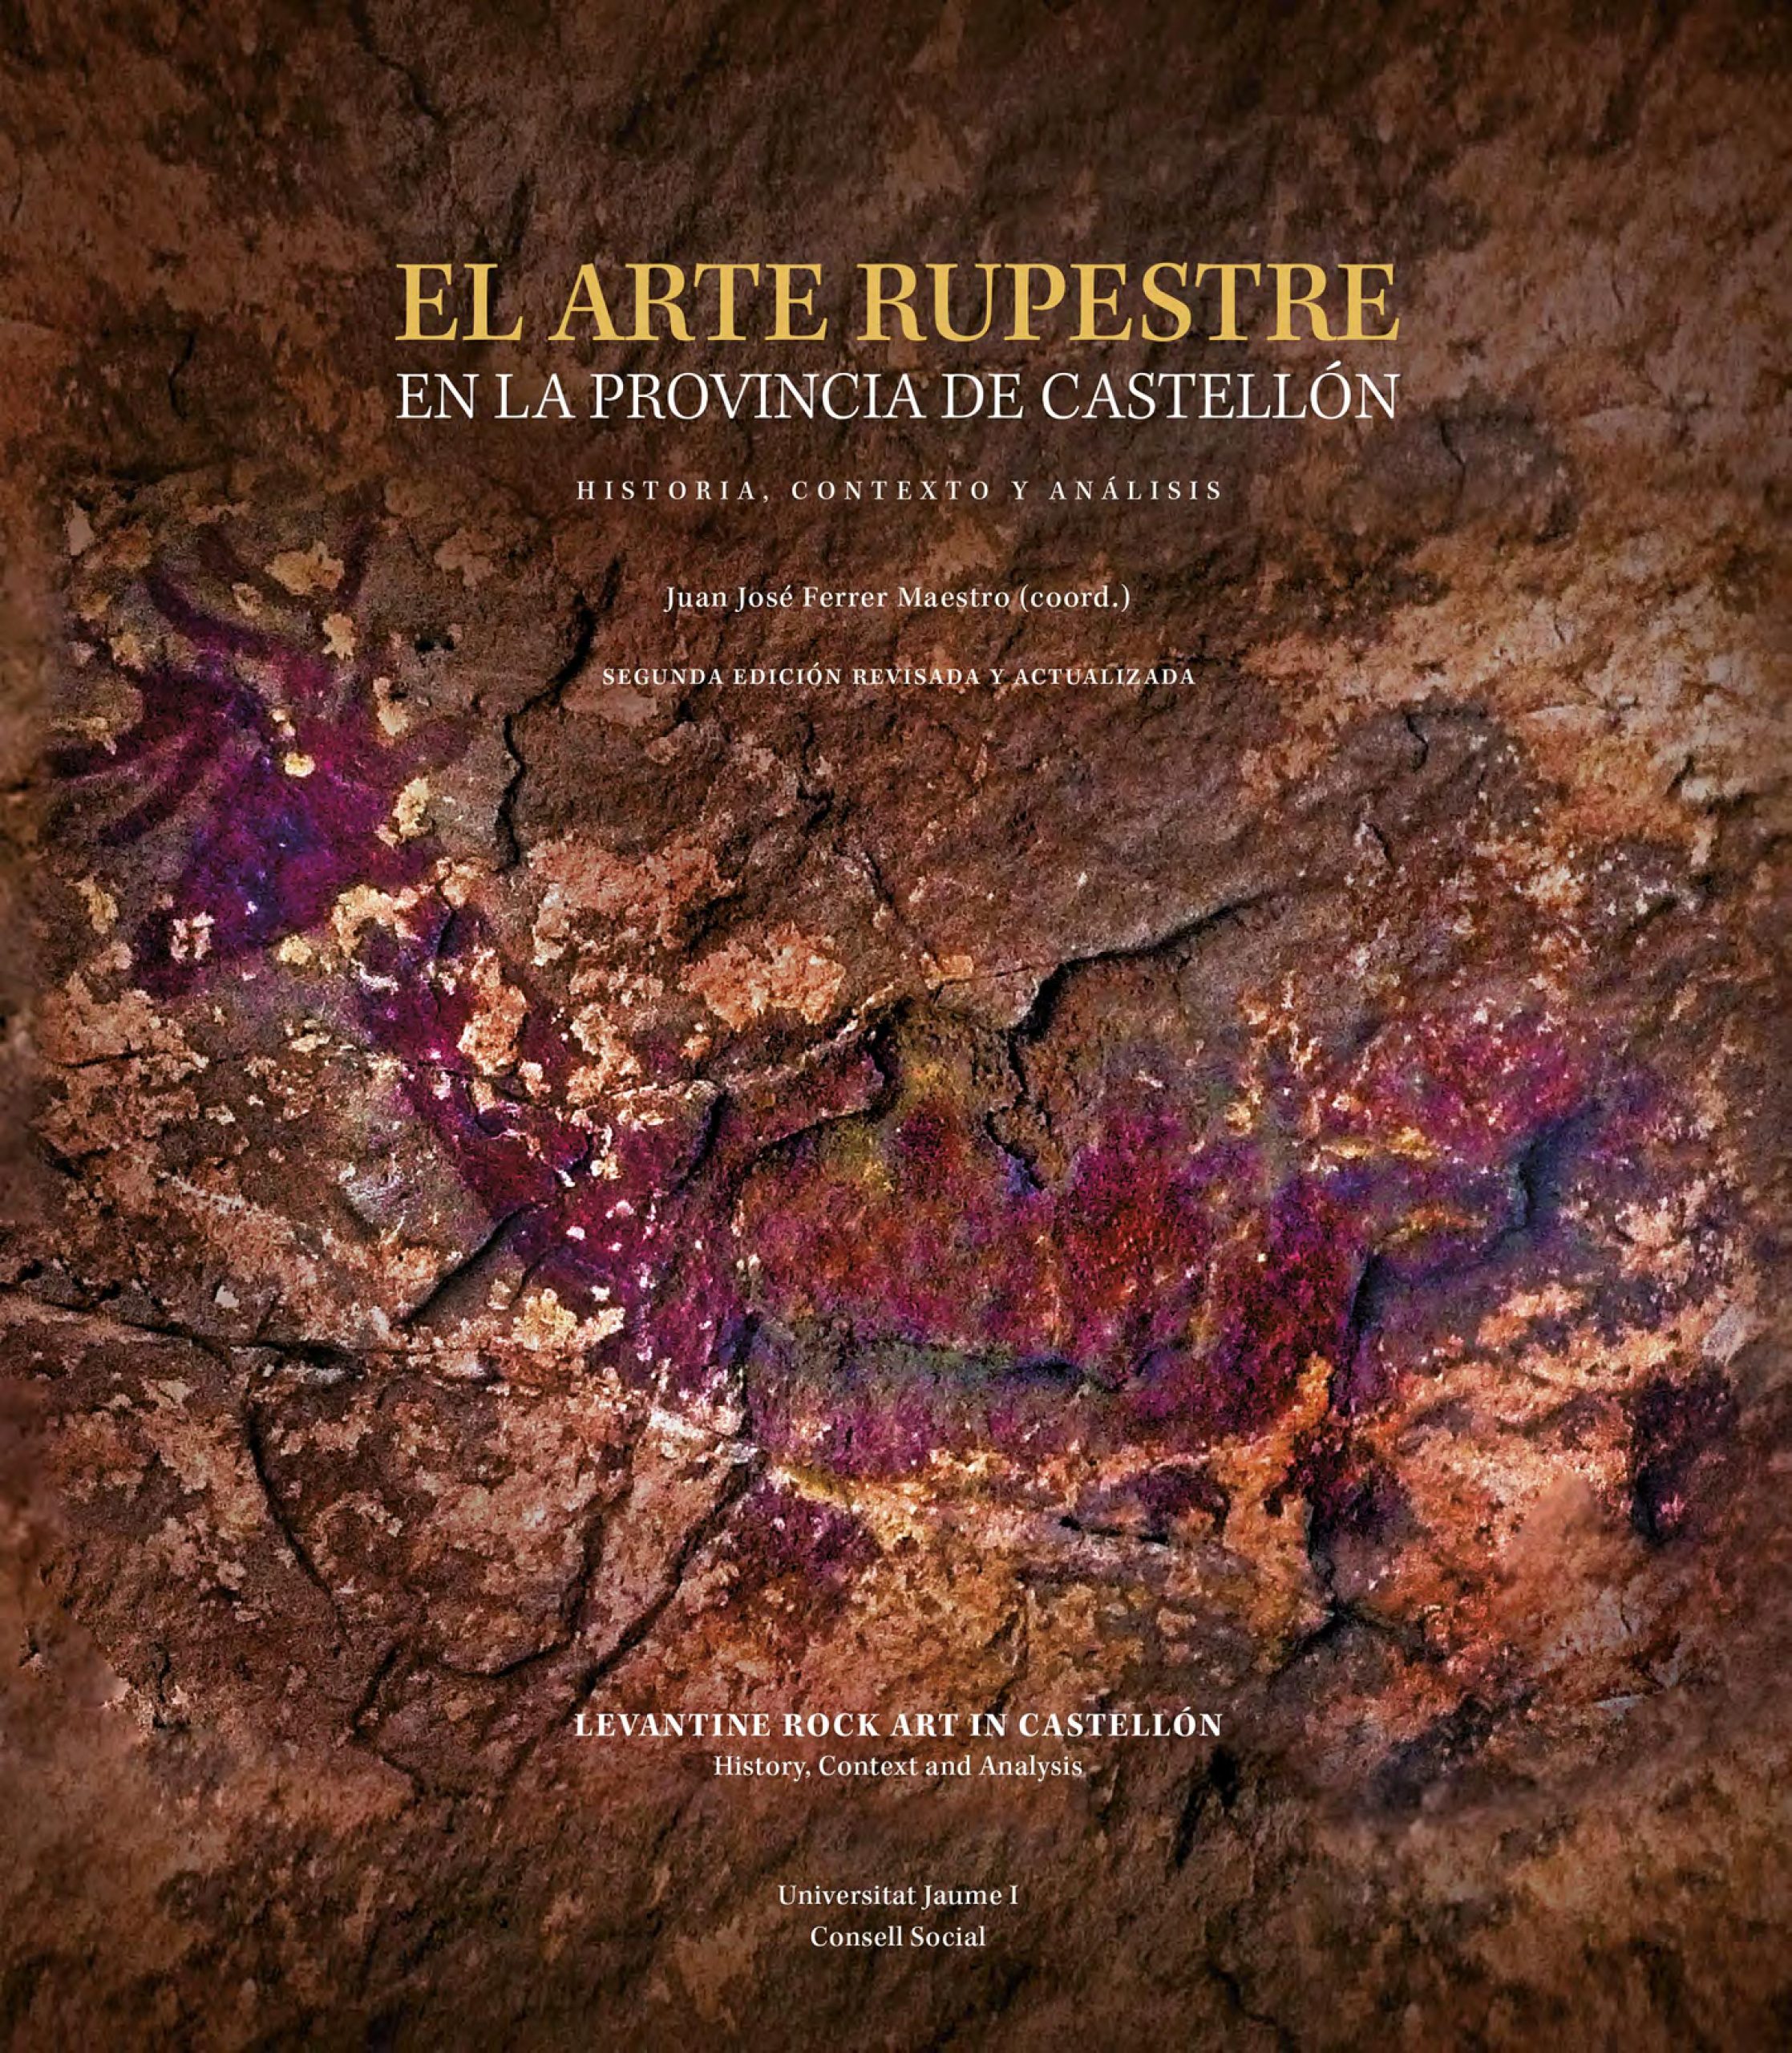 Título: El arte rupestre en la provincia de Castellón. Historia, contexto y análisis. Segunda edición revisada y actualizada